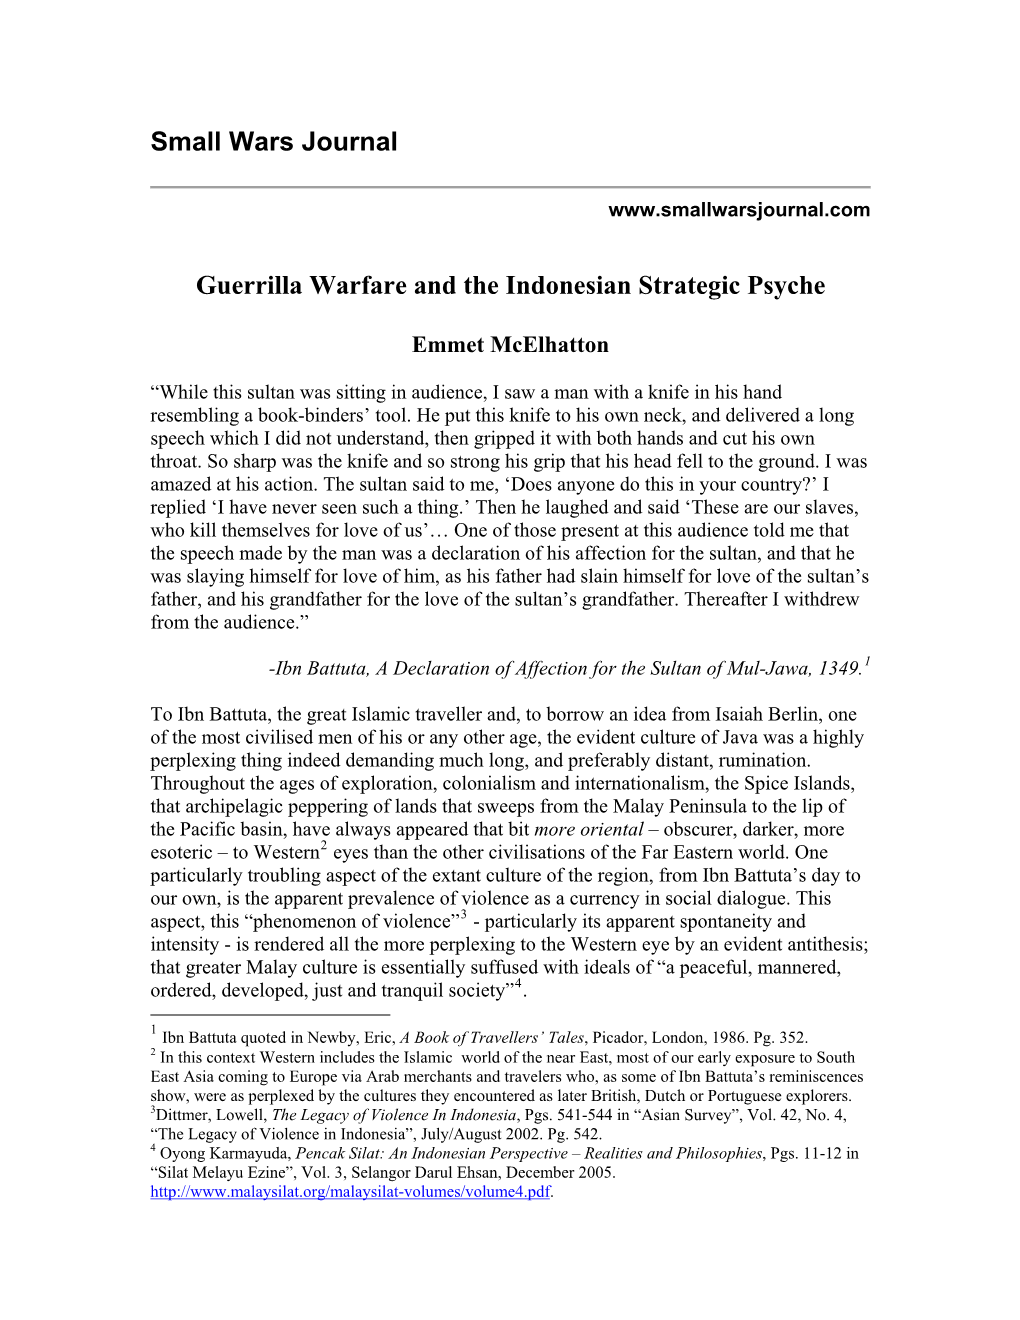 Guerrilla Warfare and the Indonesian Strategic Psyche